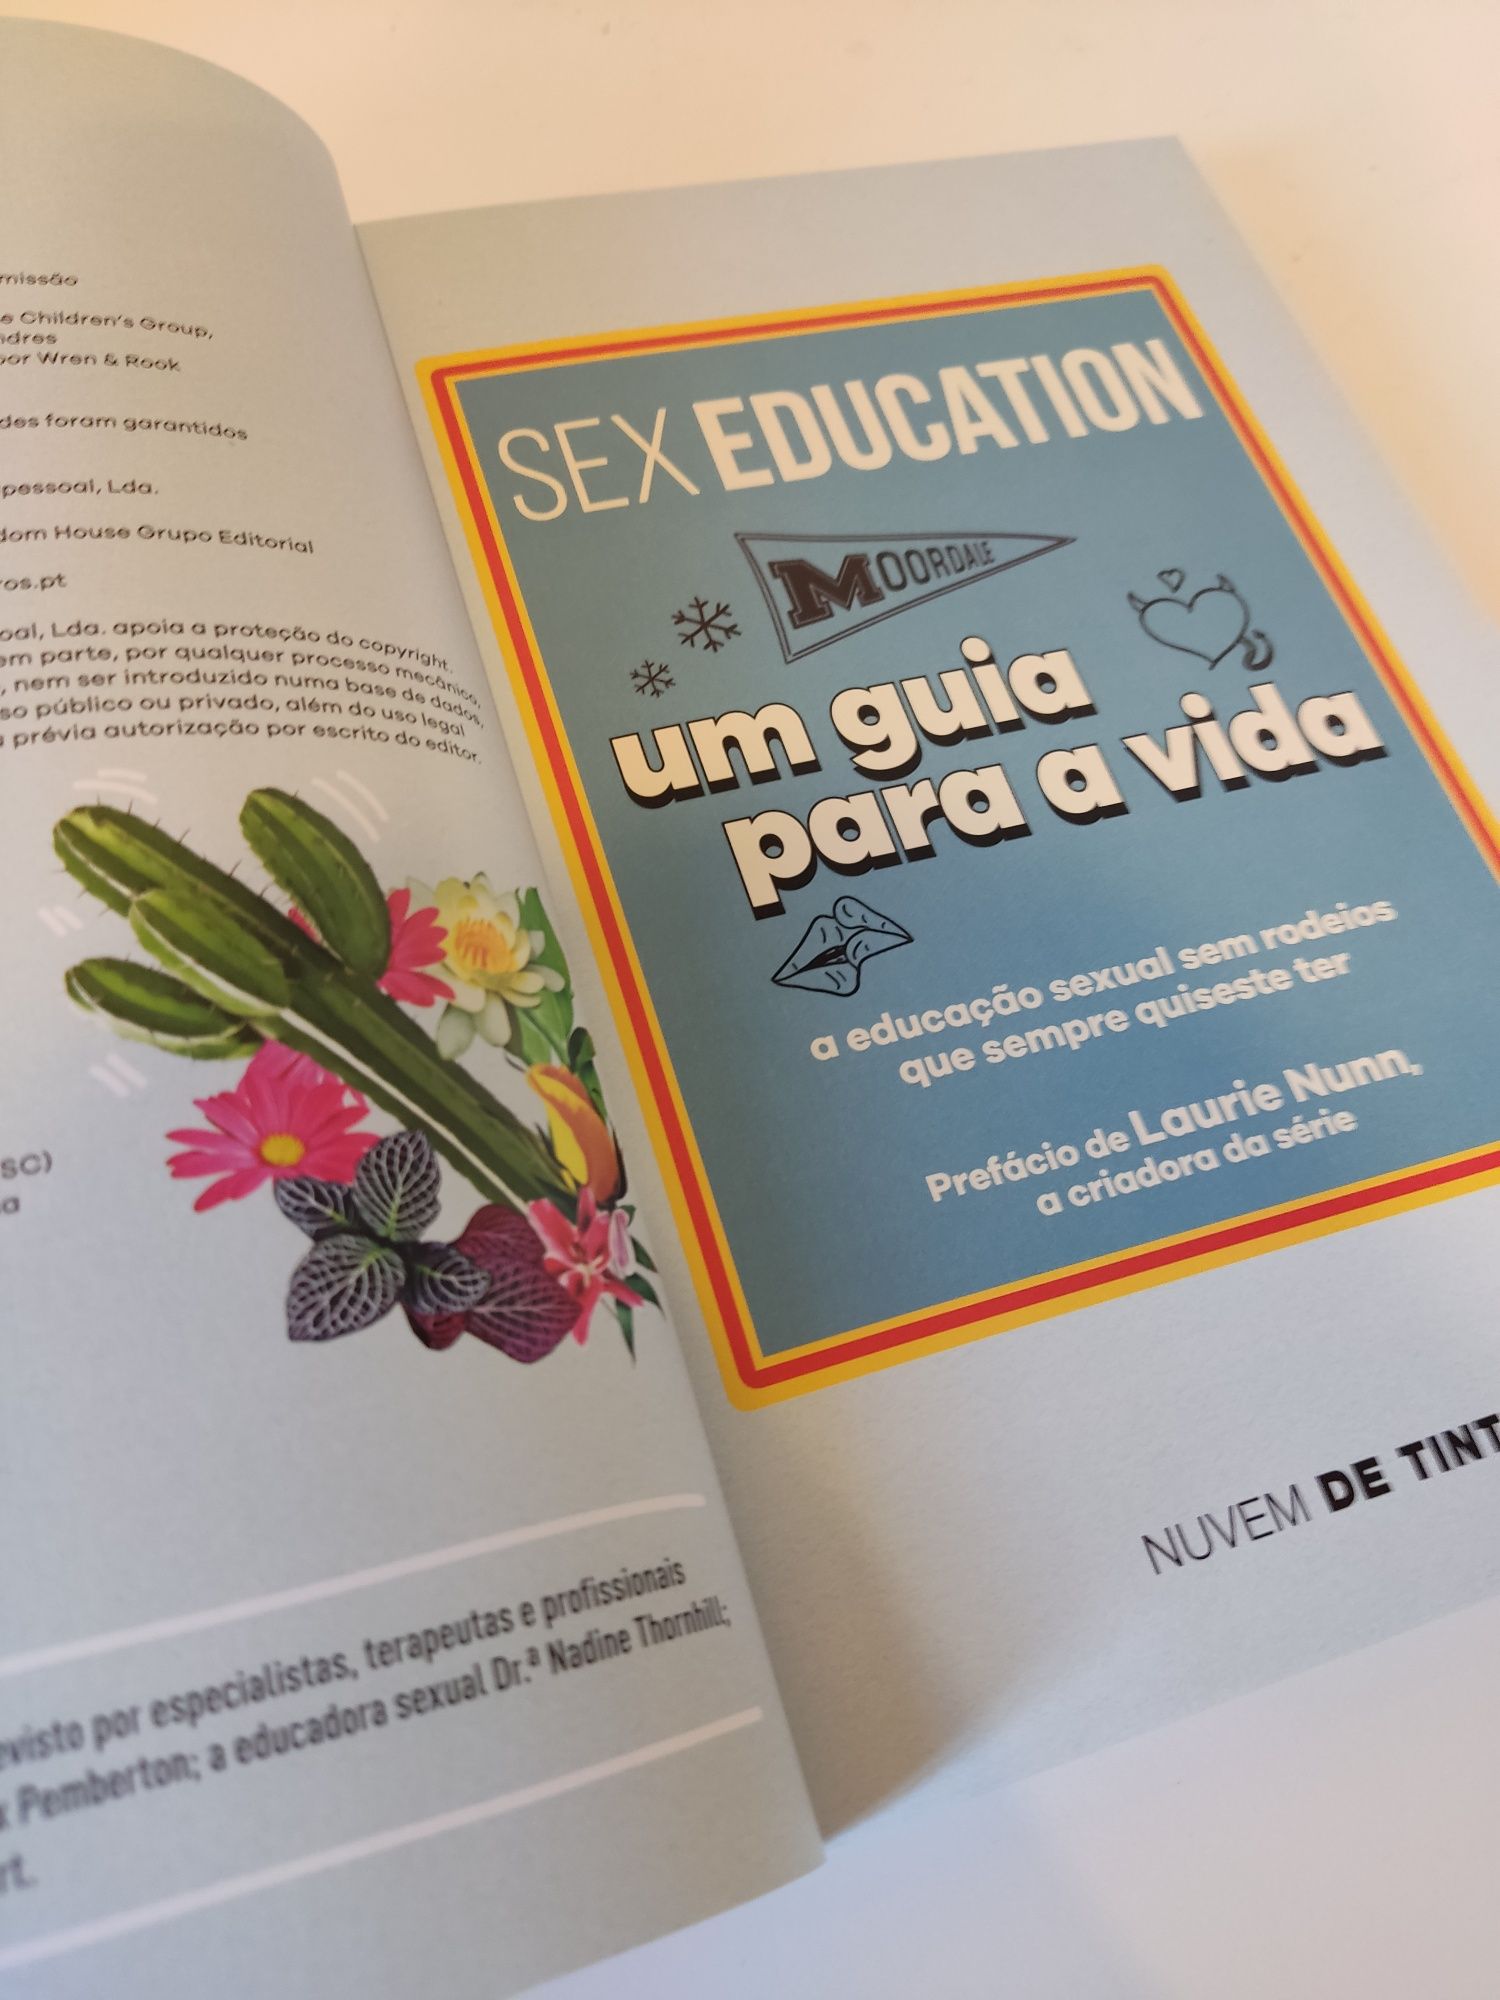 Livro "Sex Education - Um Guia para a Vida" - Novo